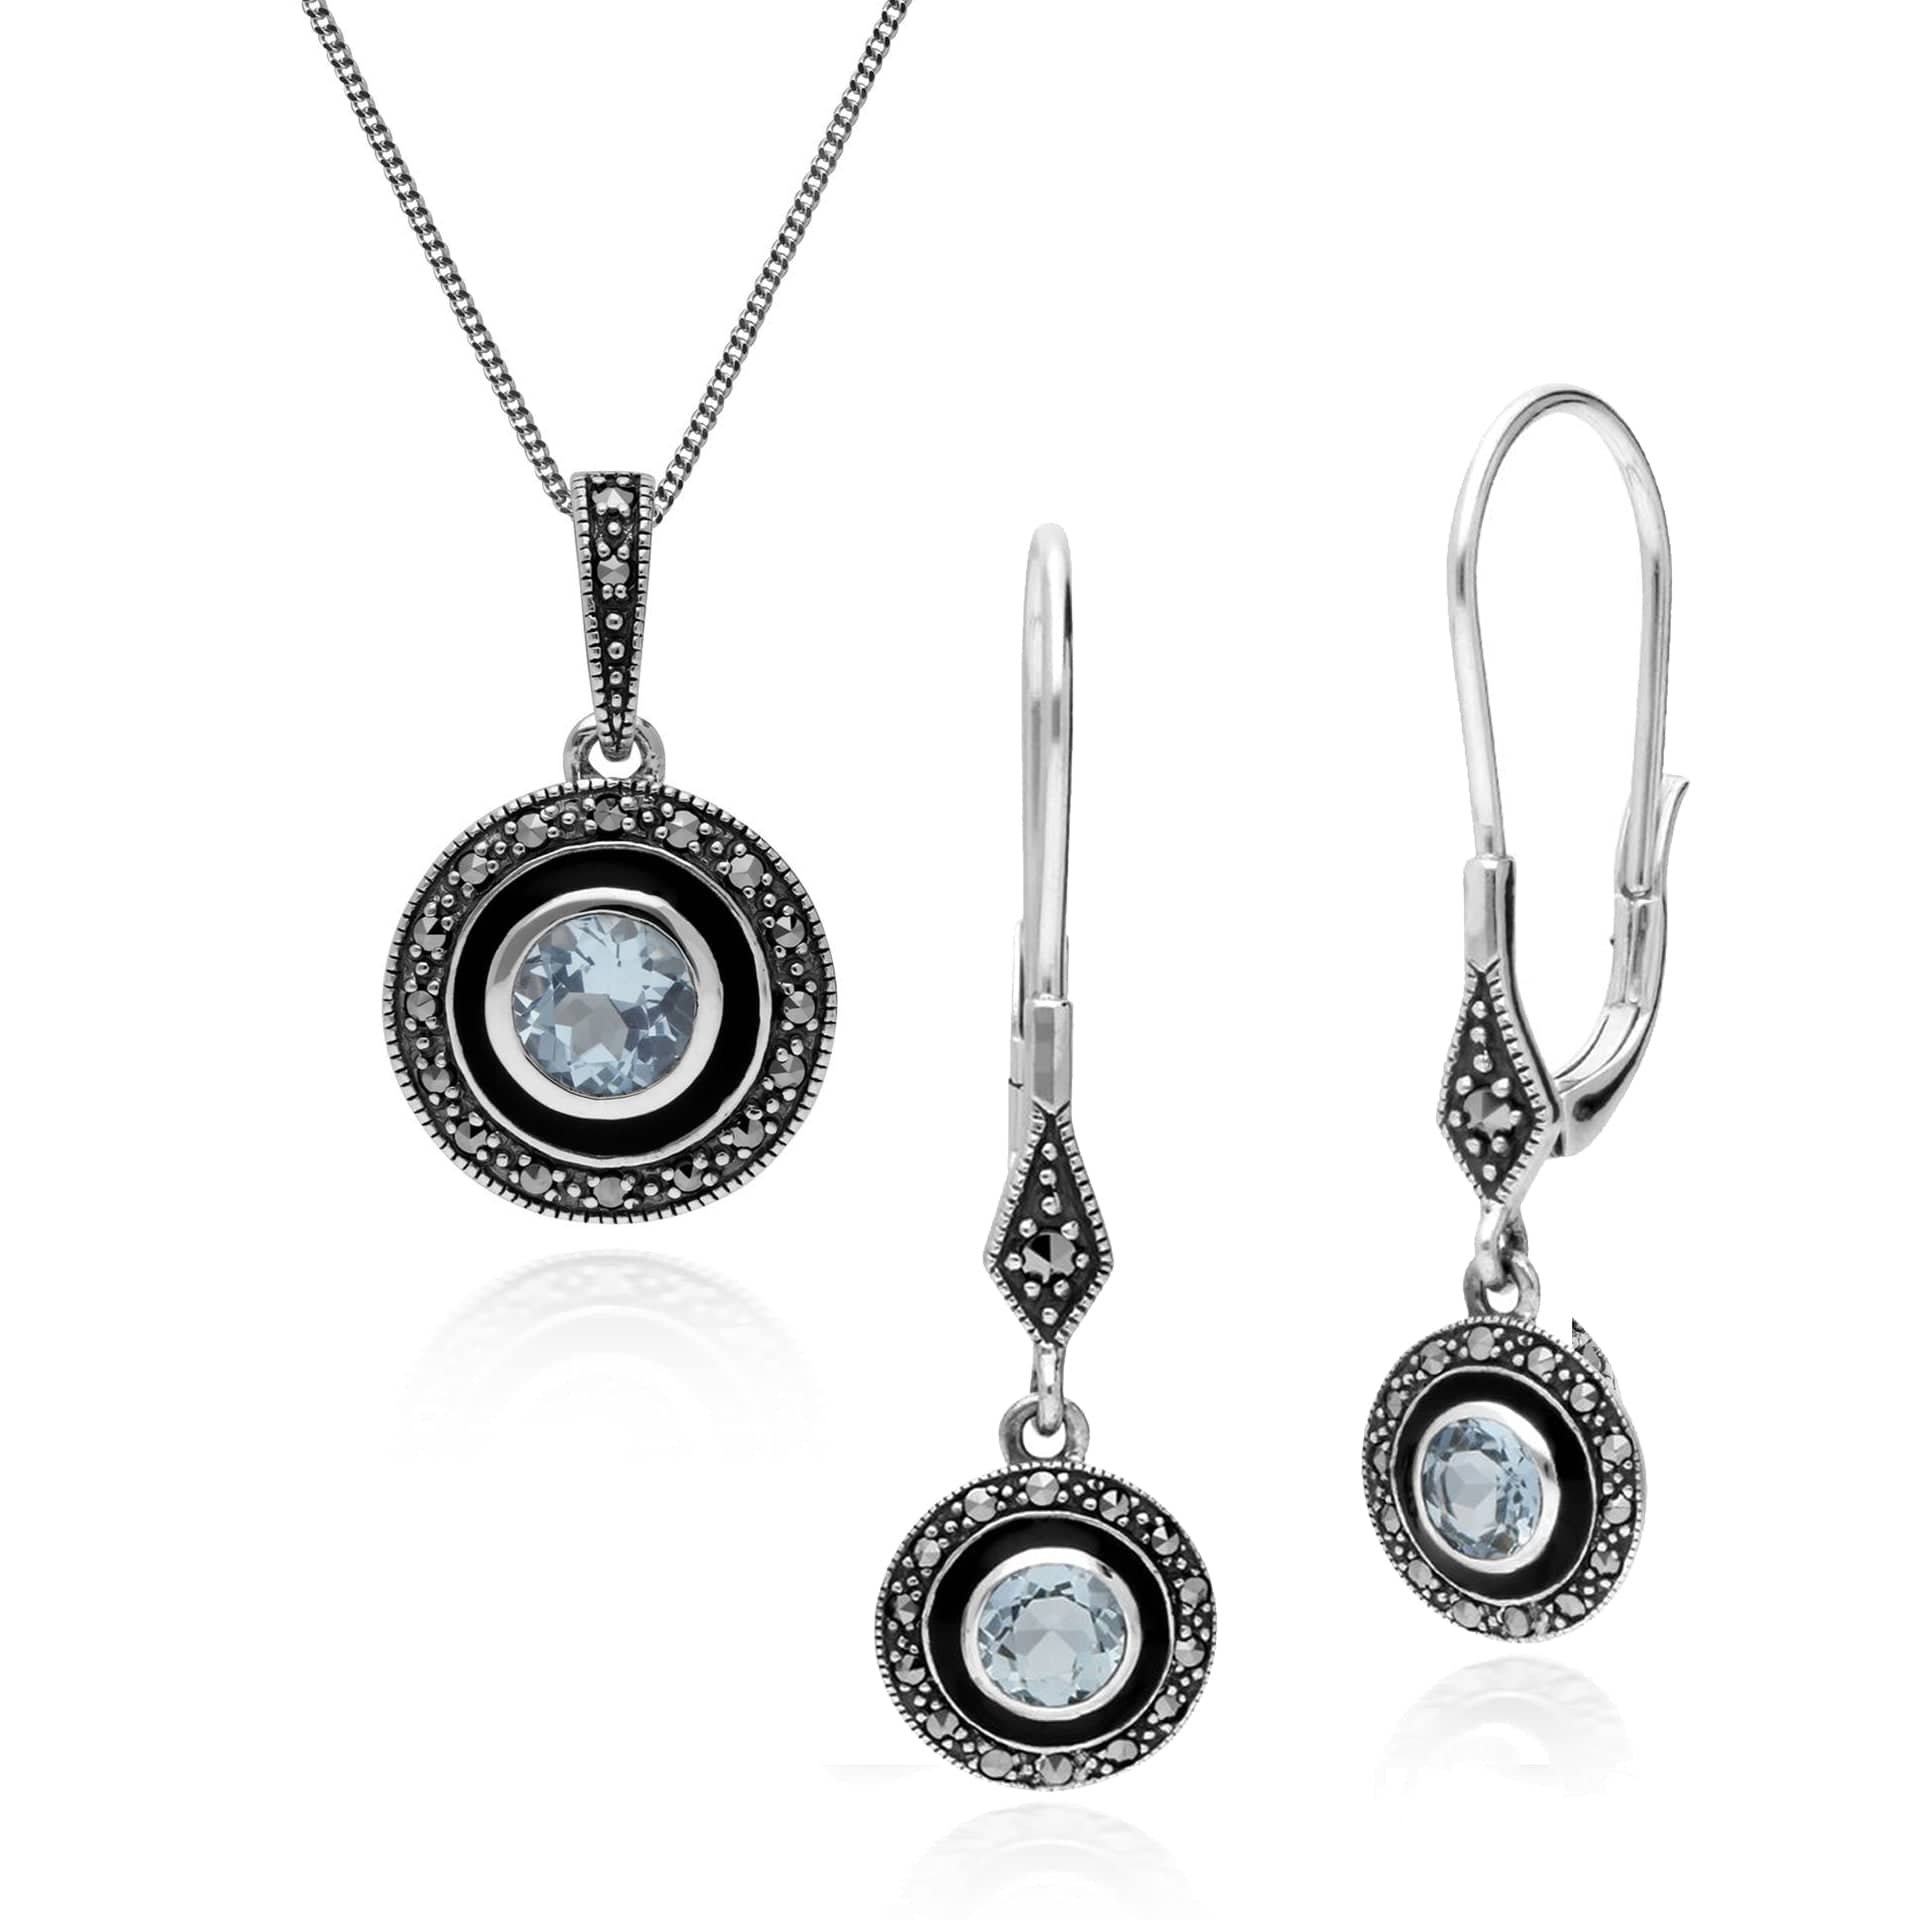 214E860701925-214P301301925 Art Deco Style Round Blue Topaz, Marcasite & Black Enamel Drop Earrings & Pendant Set in 925 Sterling Silver 1